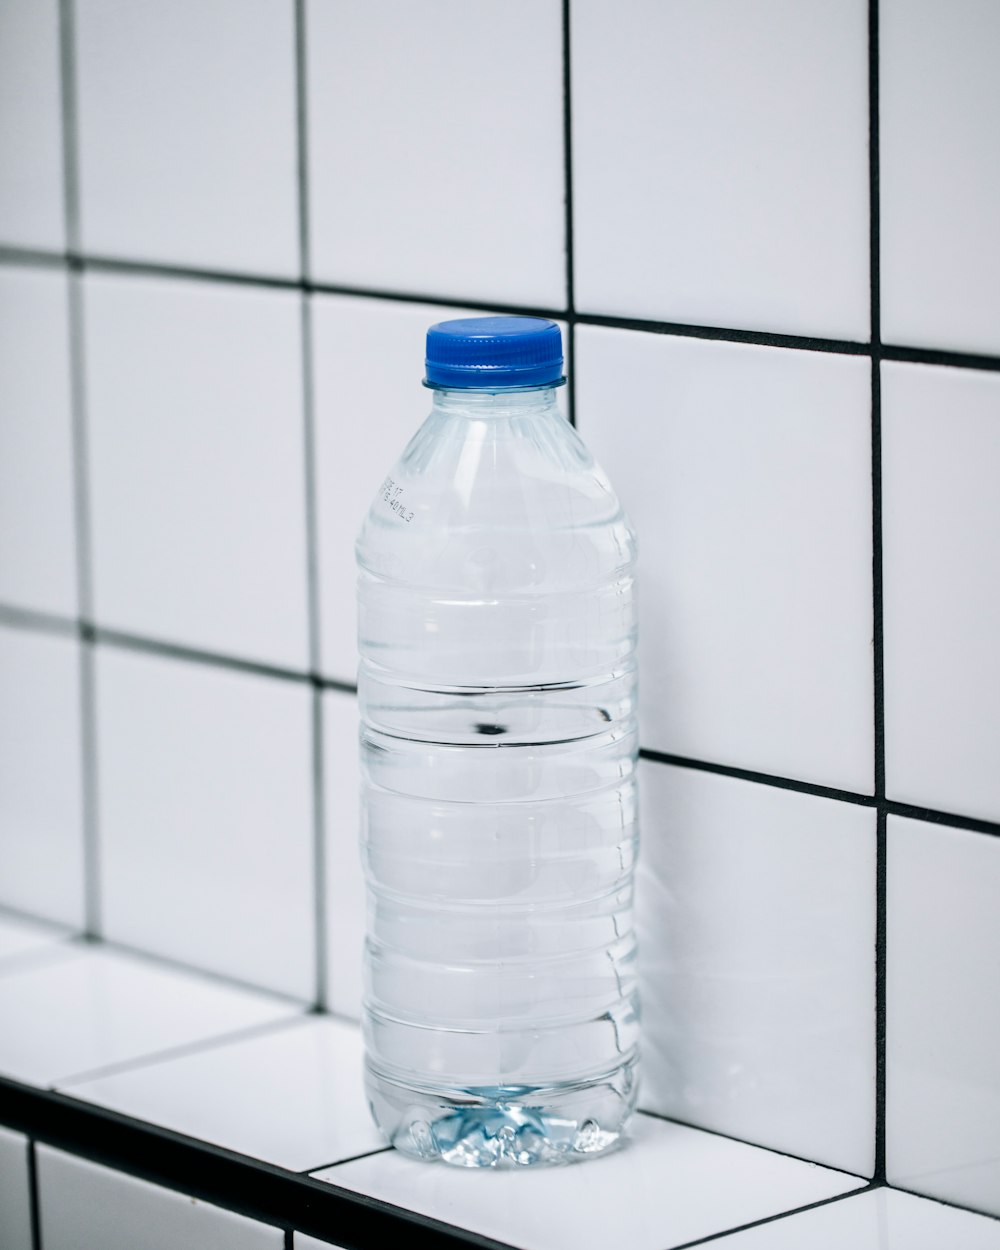 clear plastic bottle on white ceramic tiles